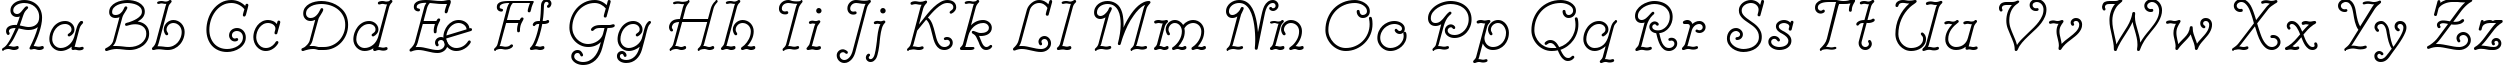 Пример написания английского алфавита шрифтом Modestina